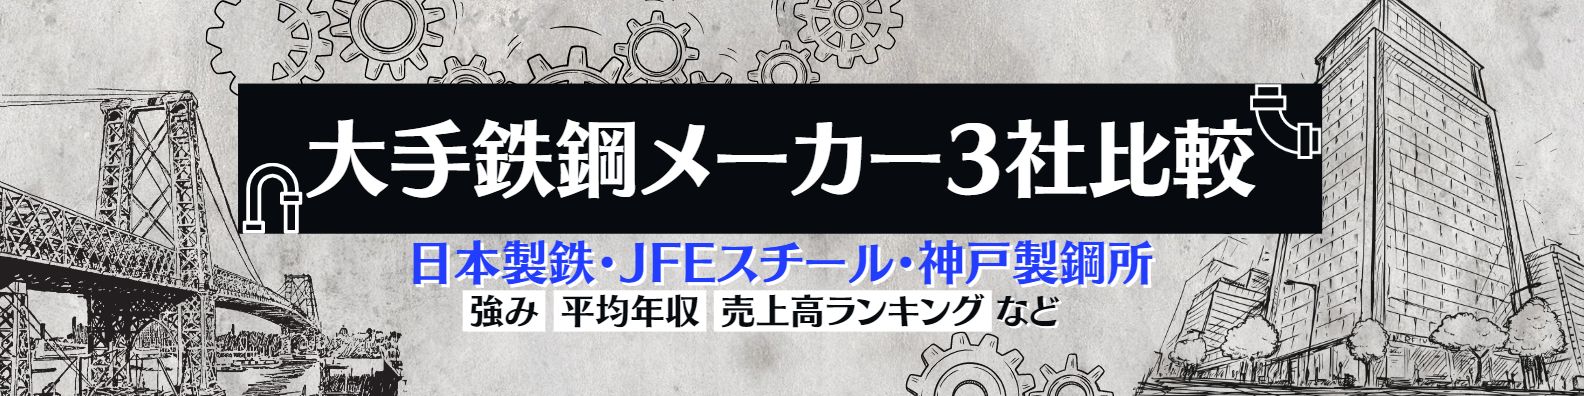 【大手鉄鋼メーカー3社比較】日本製鉄・JFEスチール・神戸製鋼所の違いとは-特徴、強み、売上高ランキングなど-